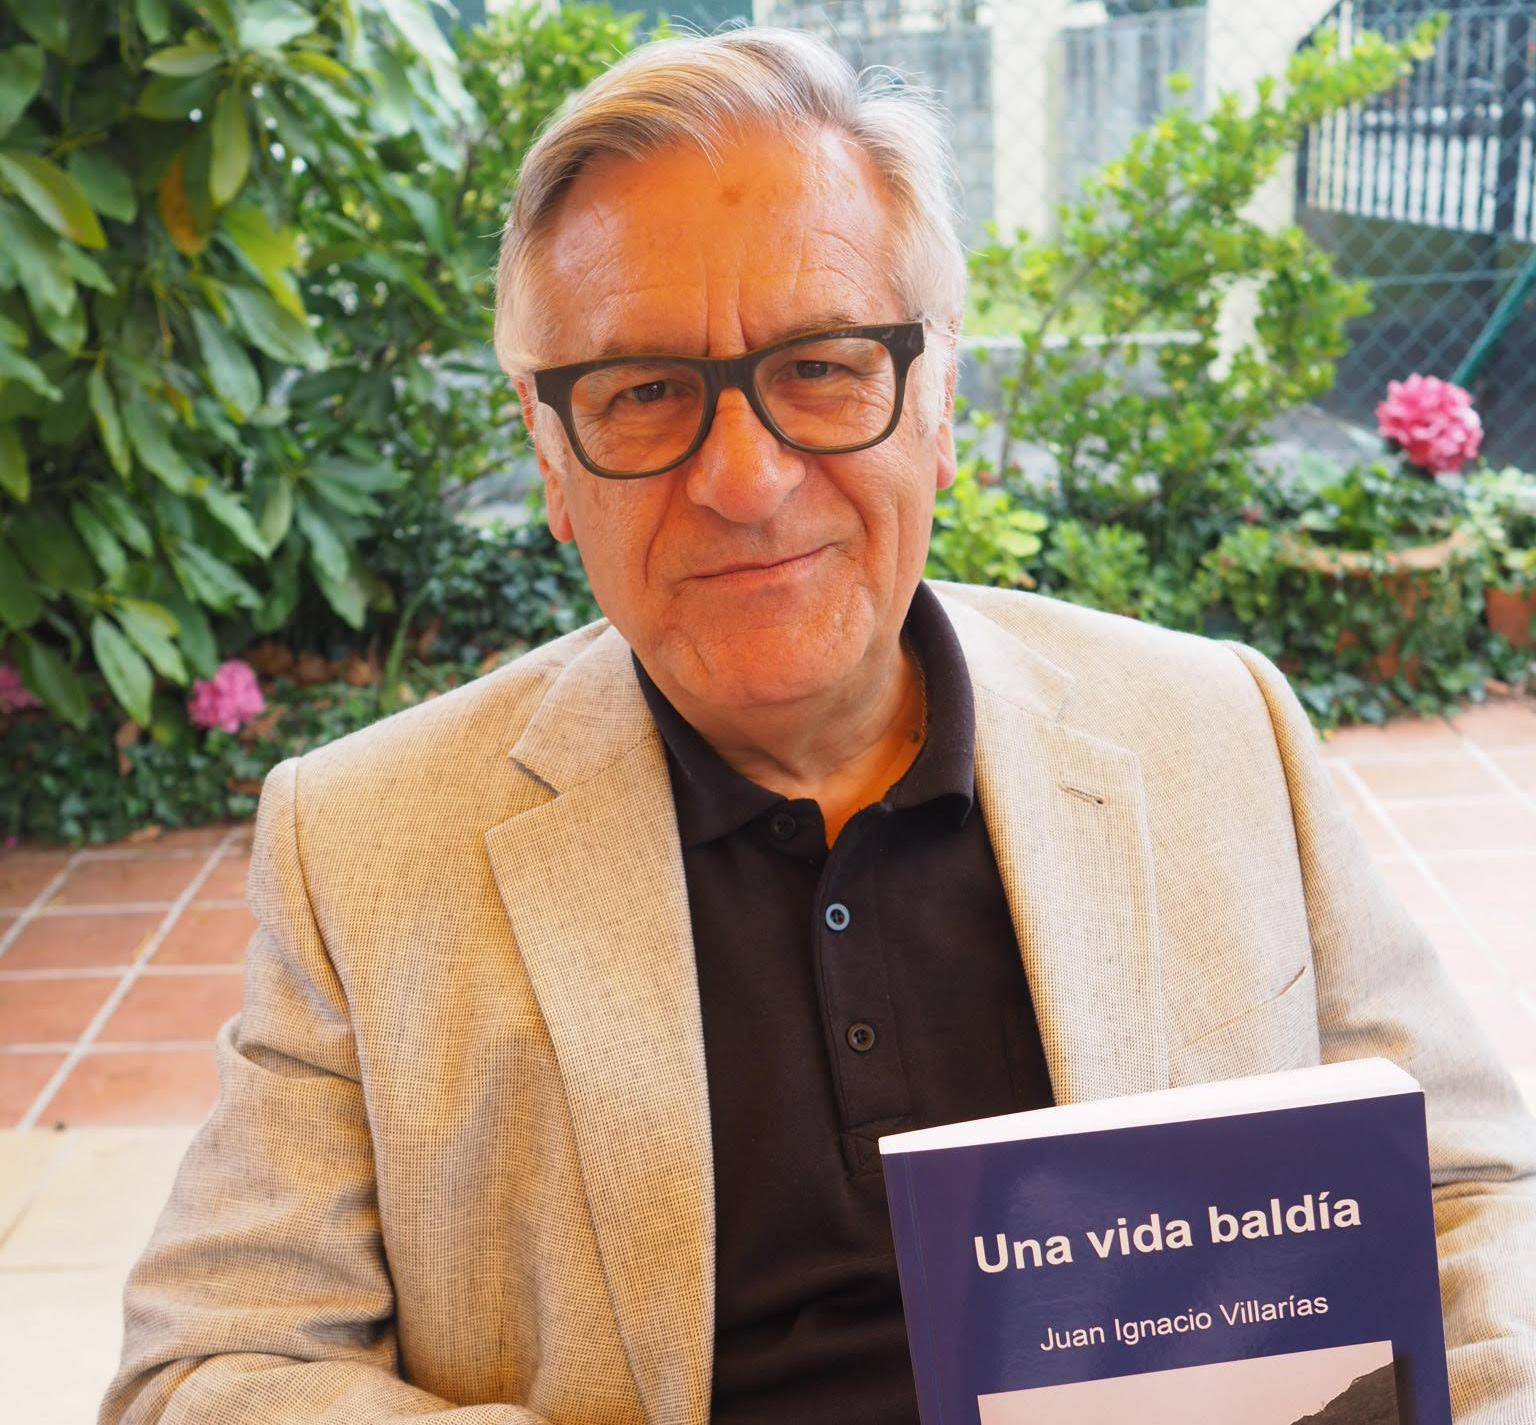 Entrevista a Juan Ignacio Villarías, autor de “Una vida baldía”